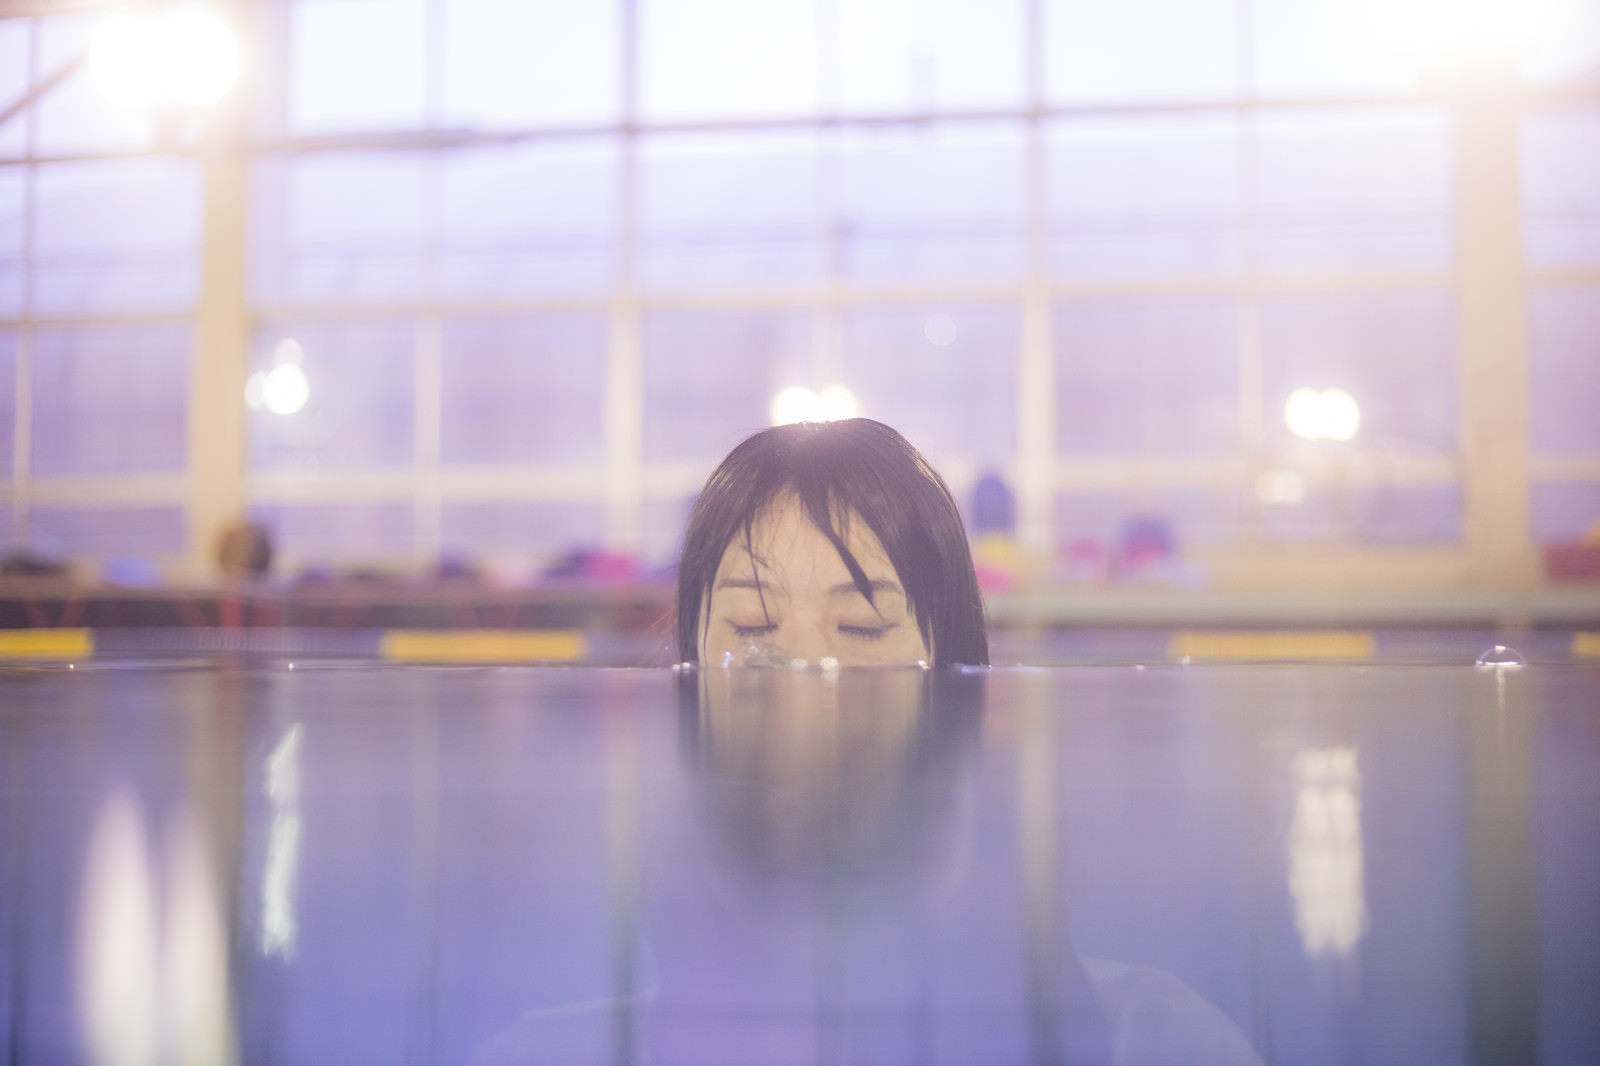 「溺れかけ女子溺れかけ女子」［モデル：たけべともこ］のフリー写真素材を拡大